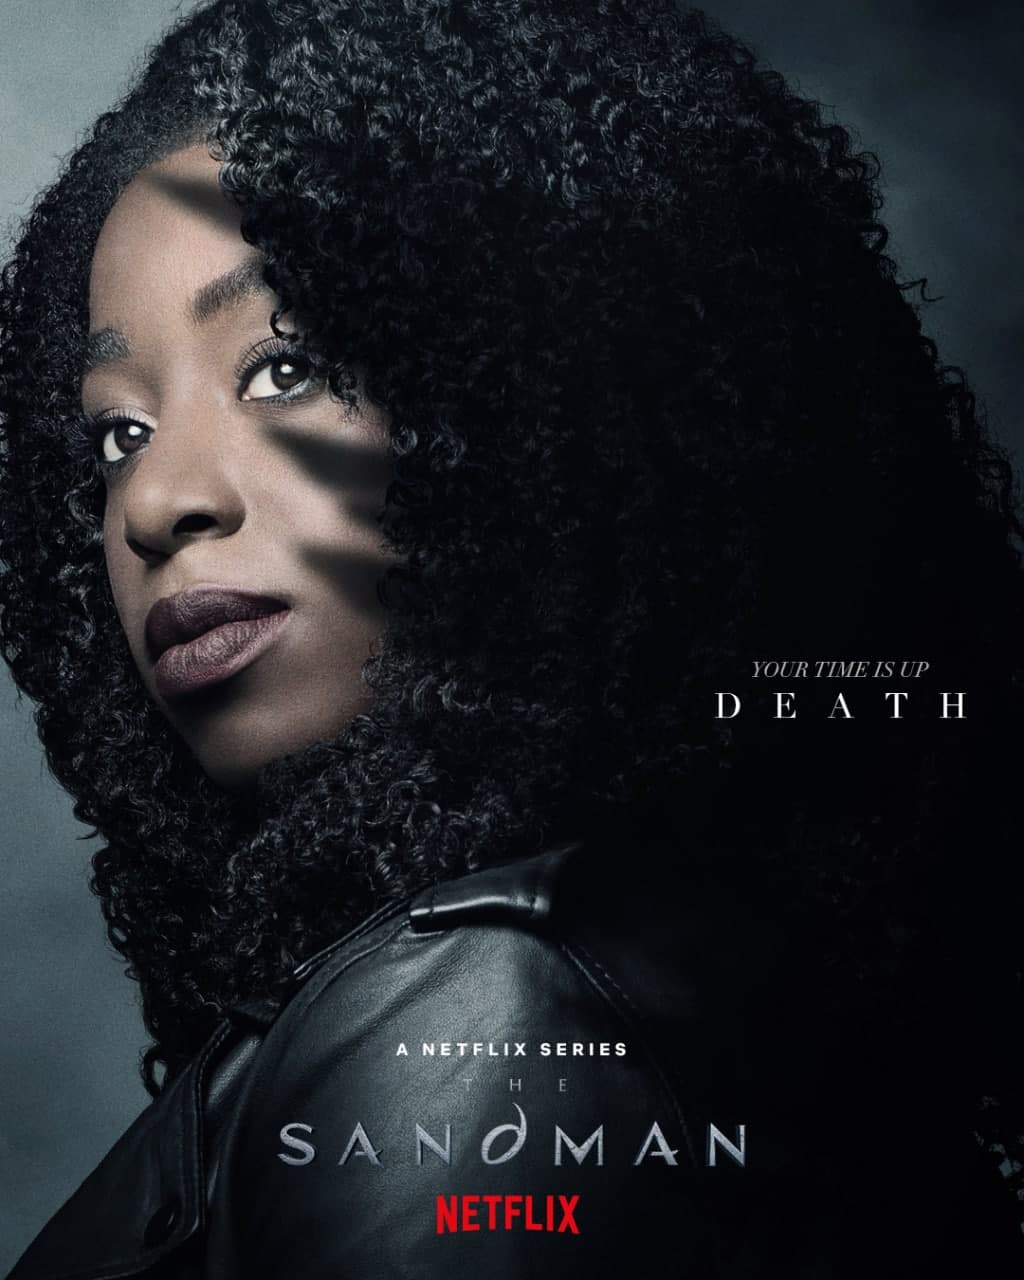 پوستر مرگ در سریال The Sandman